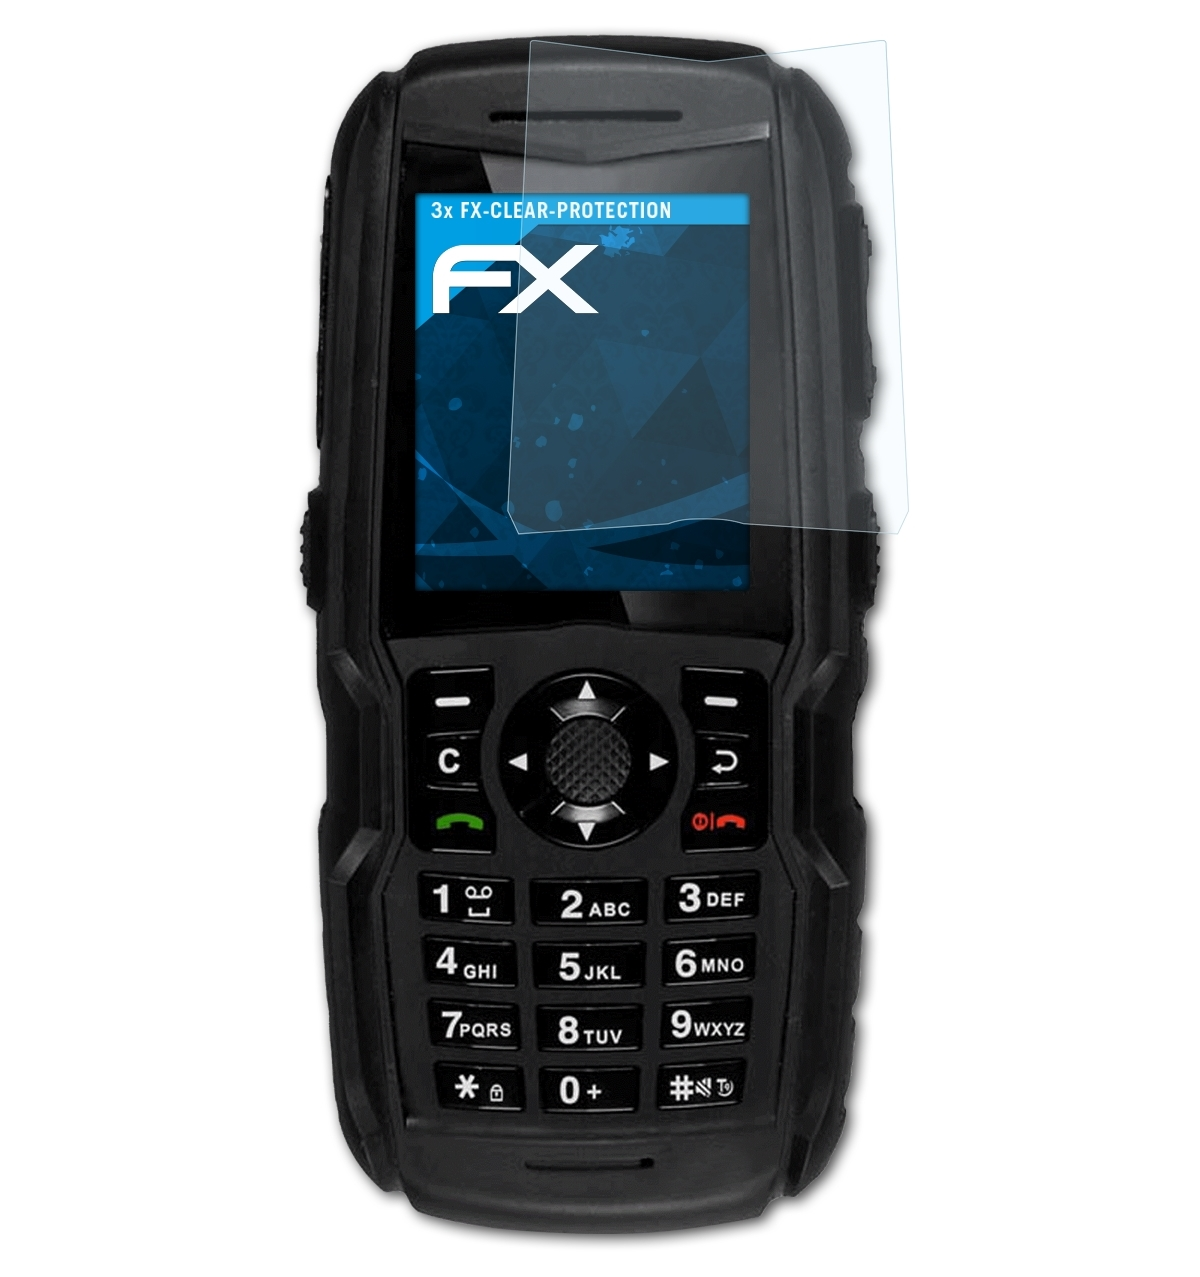 ATFOLIX 3x XP5300 Force Displayschutz(für 3G) FX-Clear Sonim